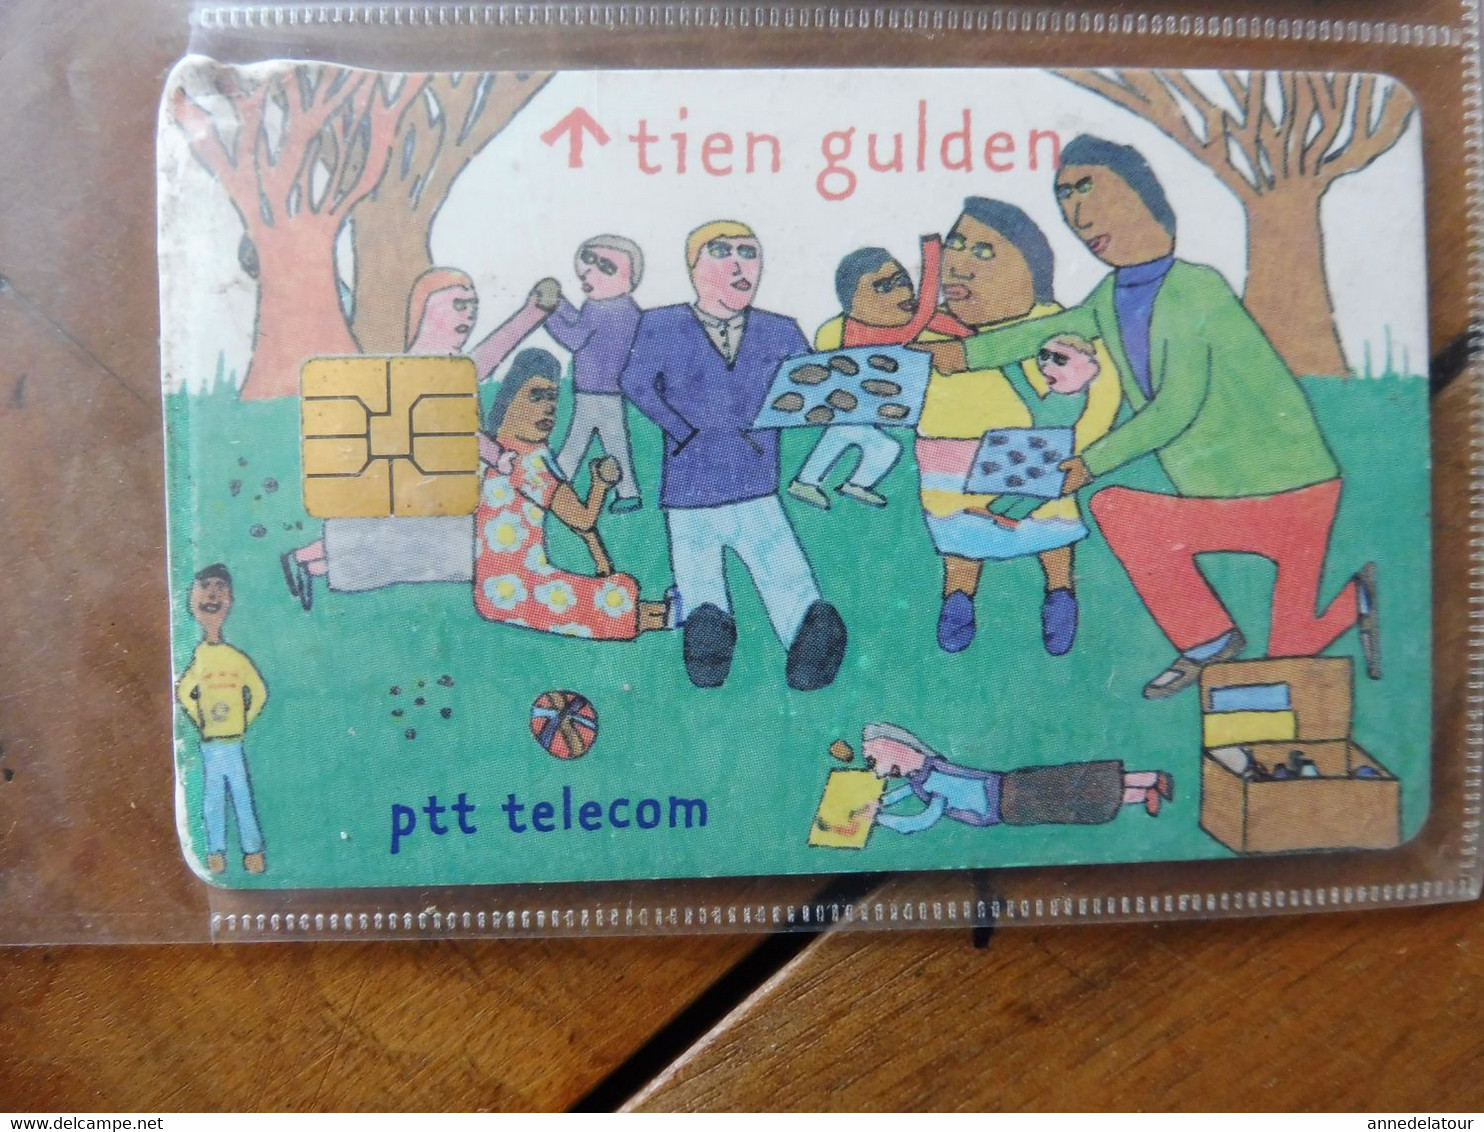 10 Télécartes PTT TELECOM  avec (publicités, dessins divers, Unicef, etc  )